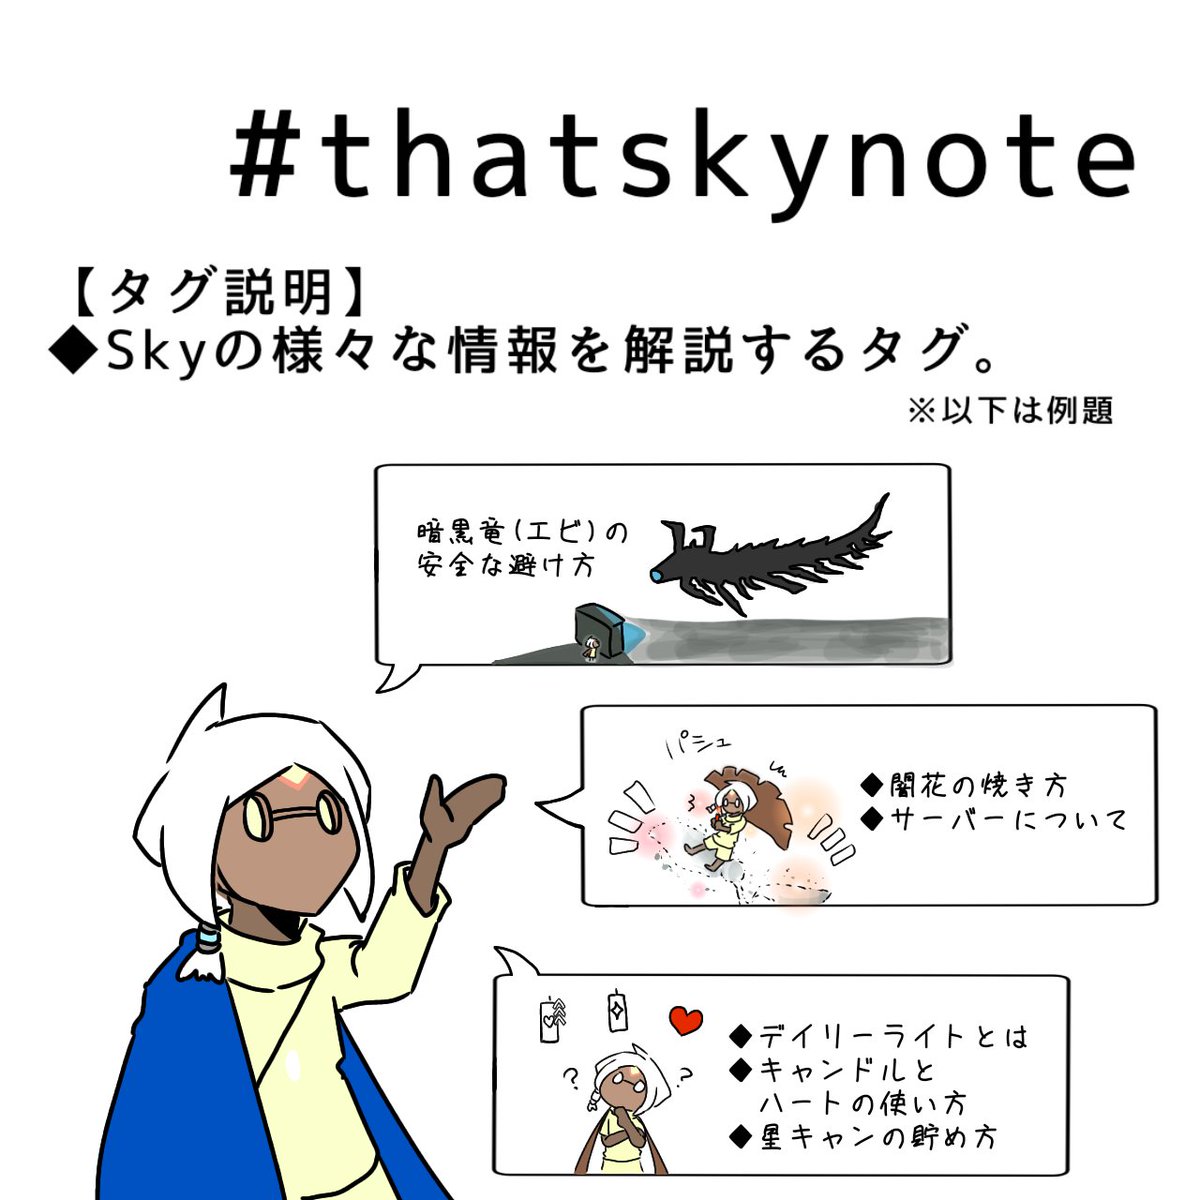 とても便利なタグなのでシェアさせて頂きます。
①枚目 #thatskynote
②枚目 #thatskyQA https://t.co/pwuwvUJ2Fi 